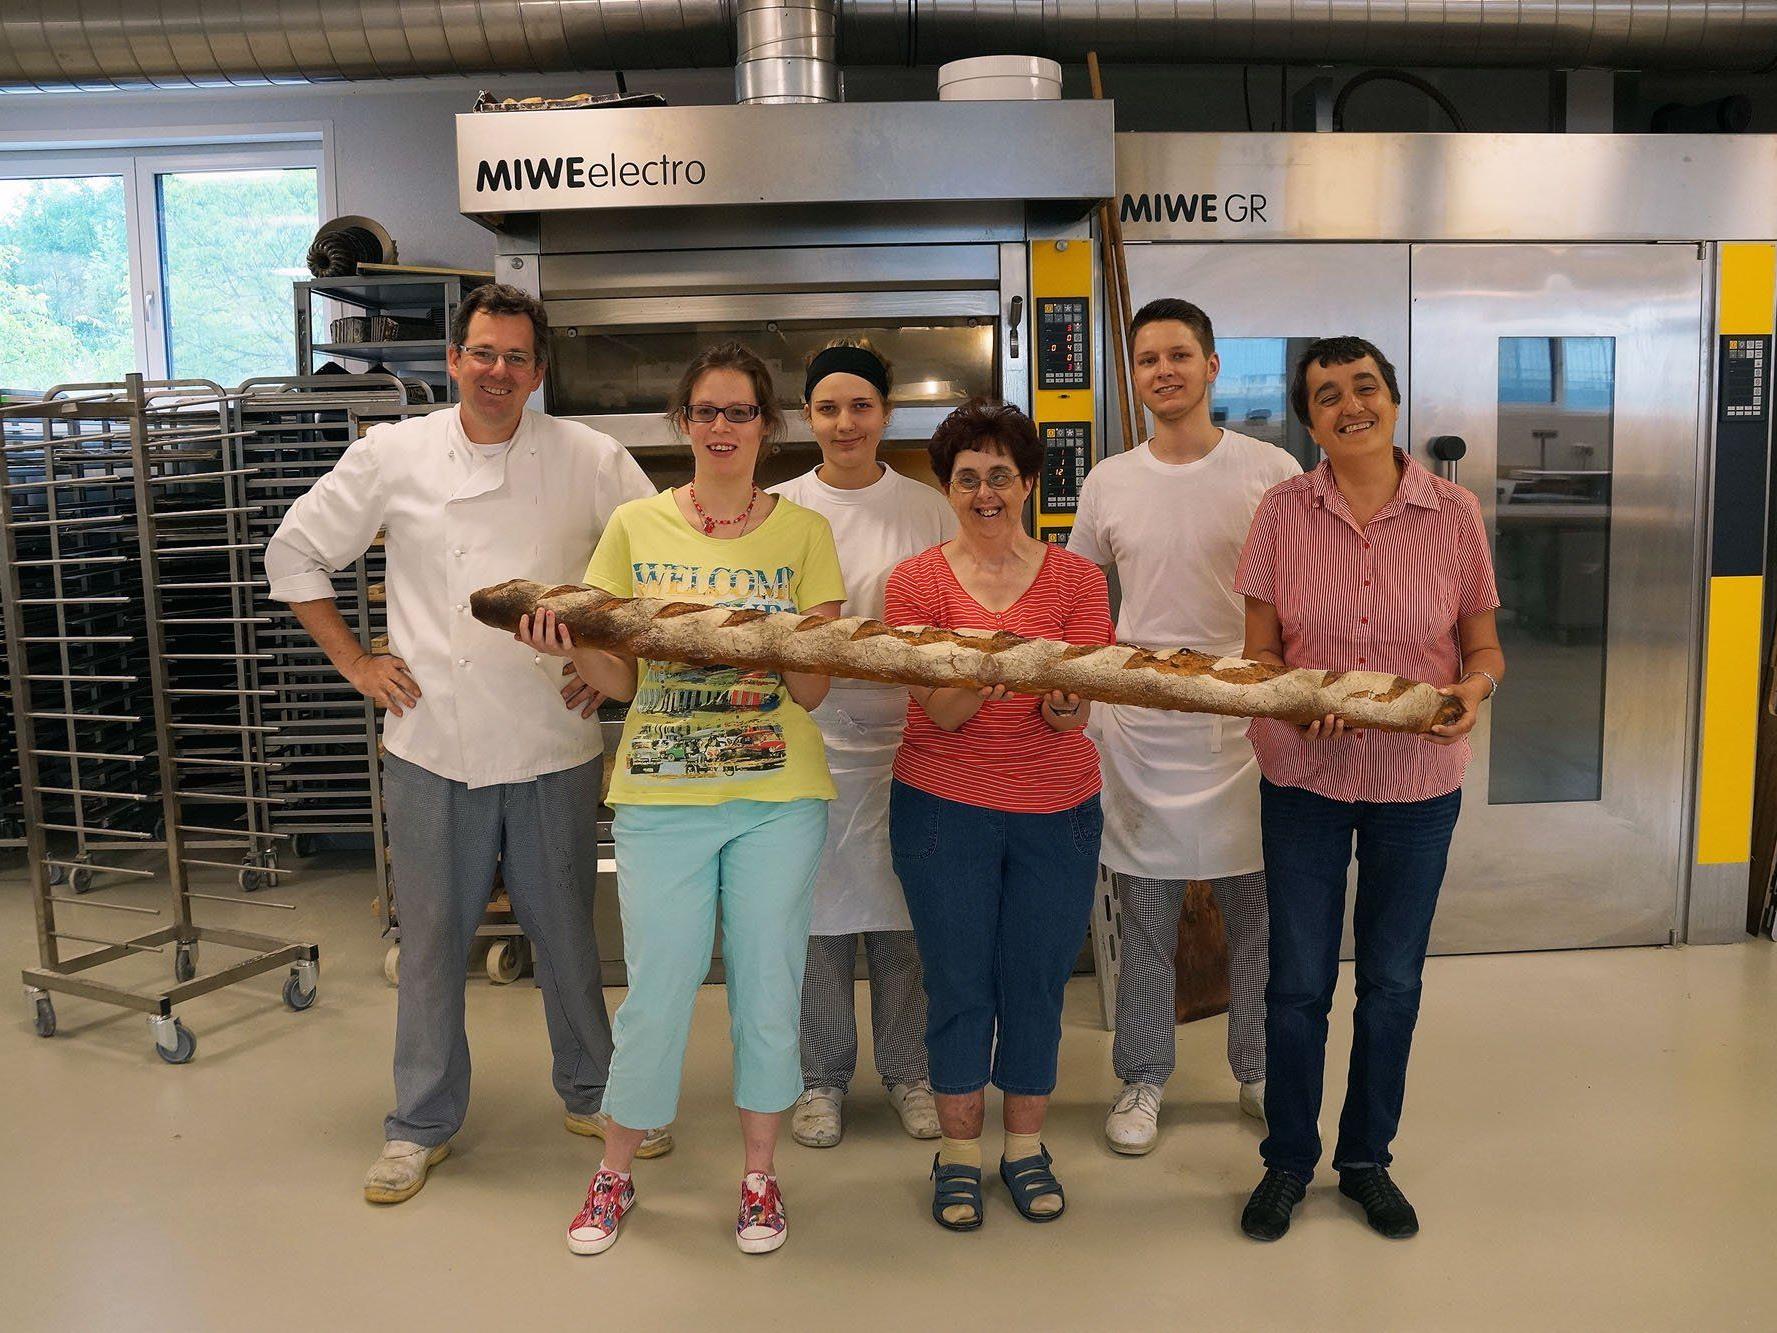 Fabienne Plattner, Sonja Ranggetiner und Monika Loacker (erste Reihe v.l.) freuen sich über das tägliche Brot von Bäckermeister Johannes Schertler (ganz links) und seinem Team.